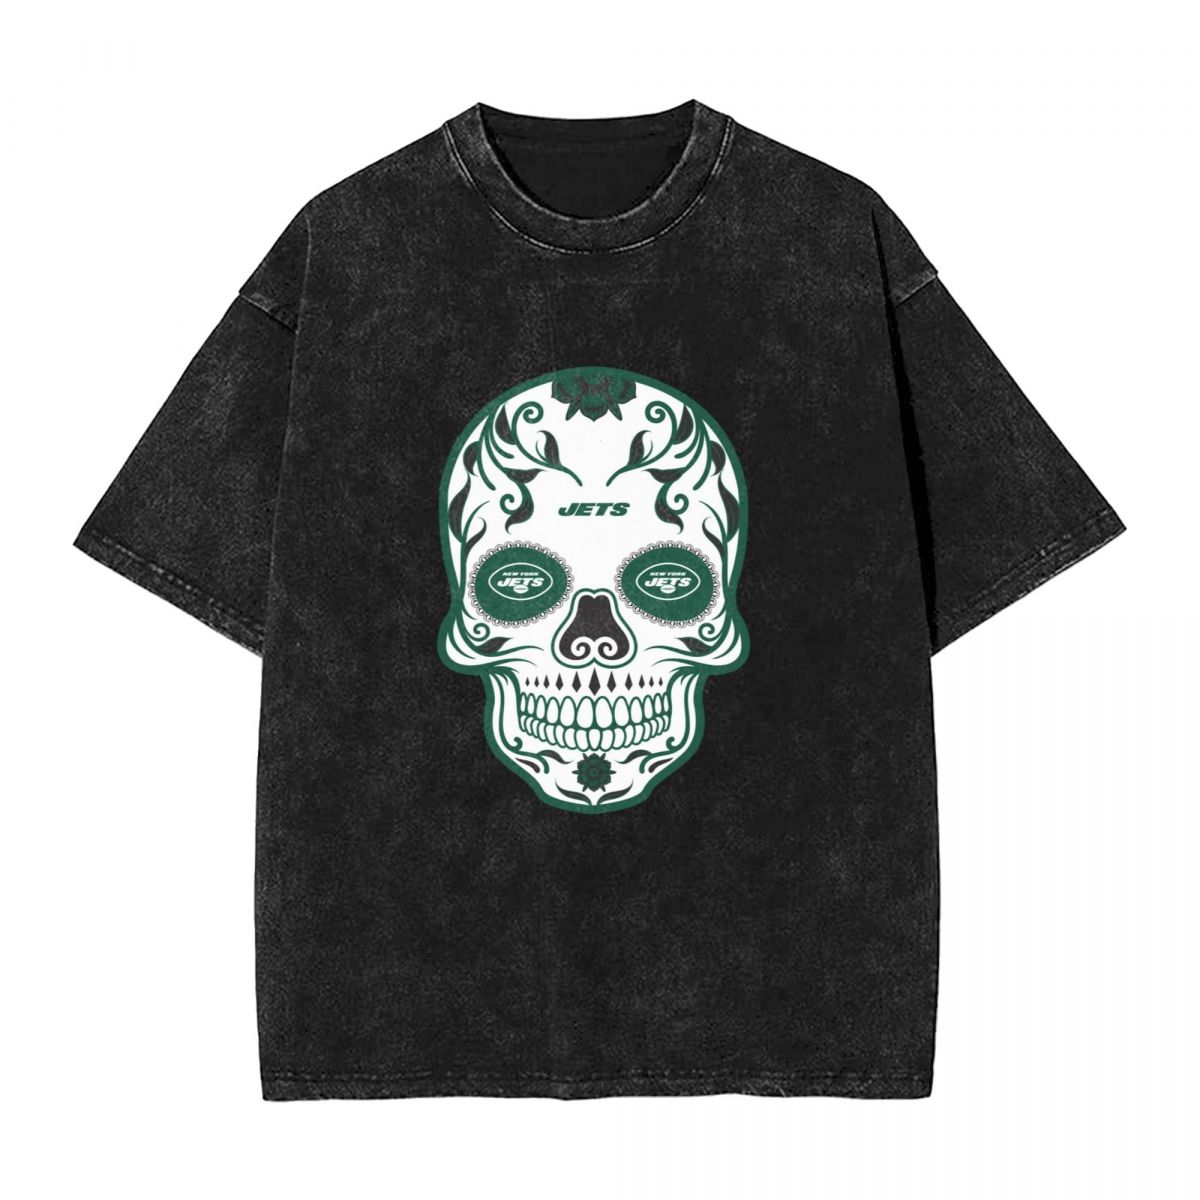 New York Jets Skull Vintage Oversized T-Shirt Men's